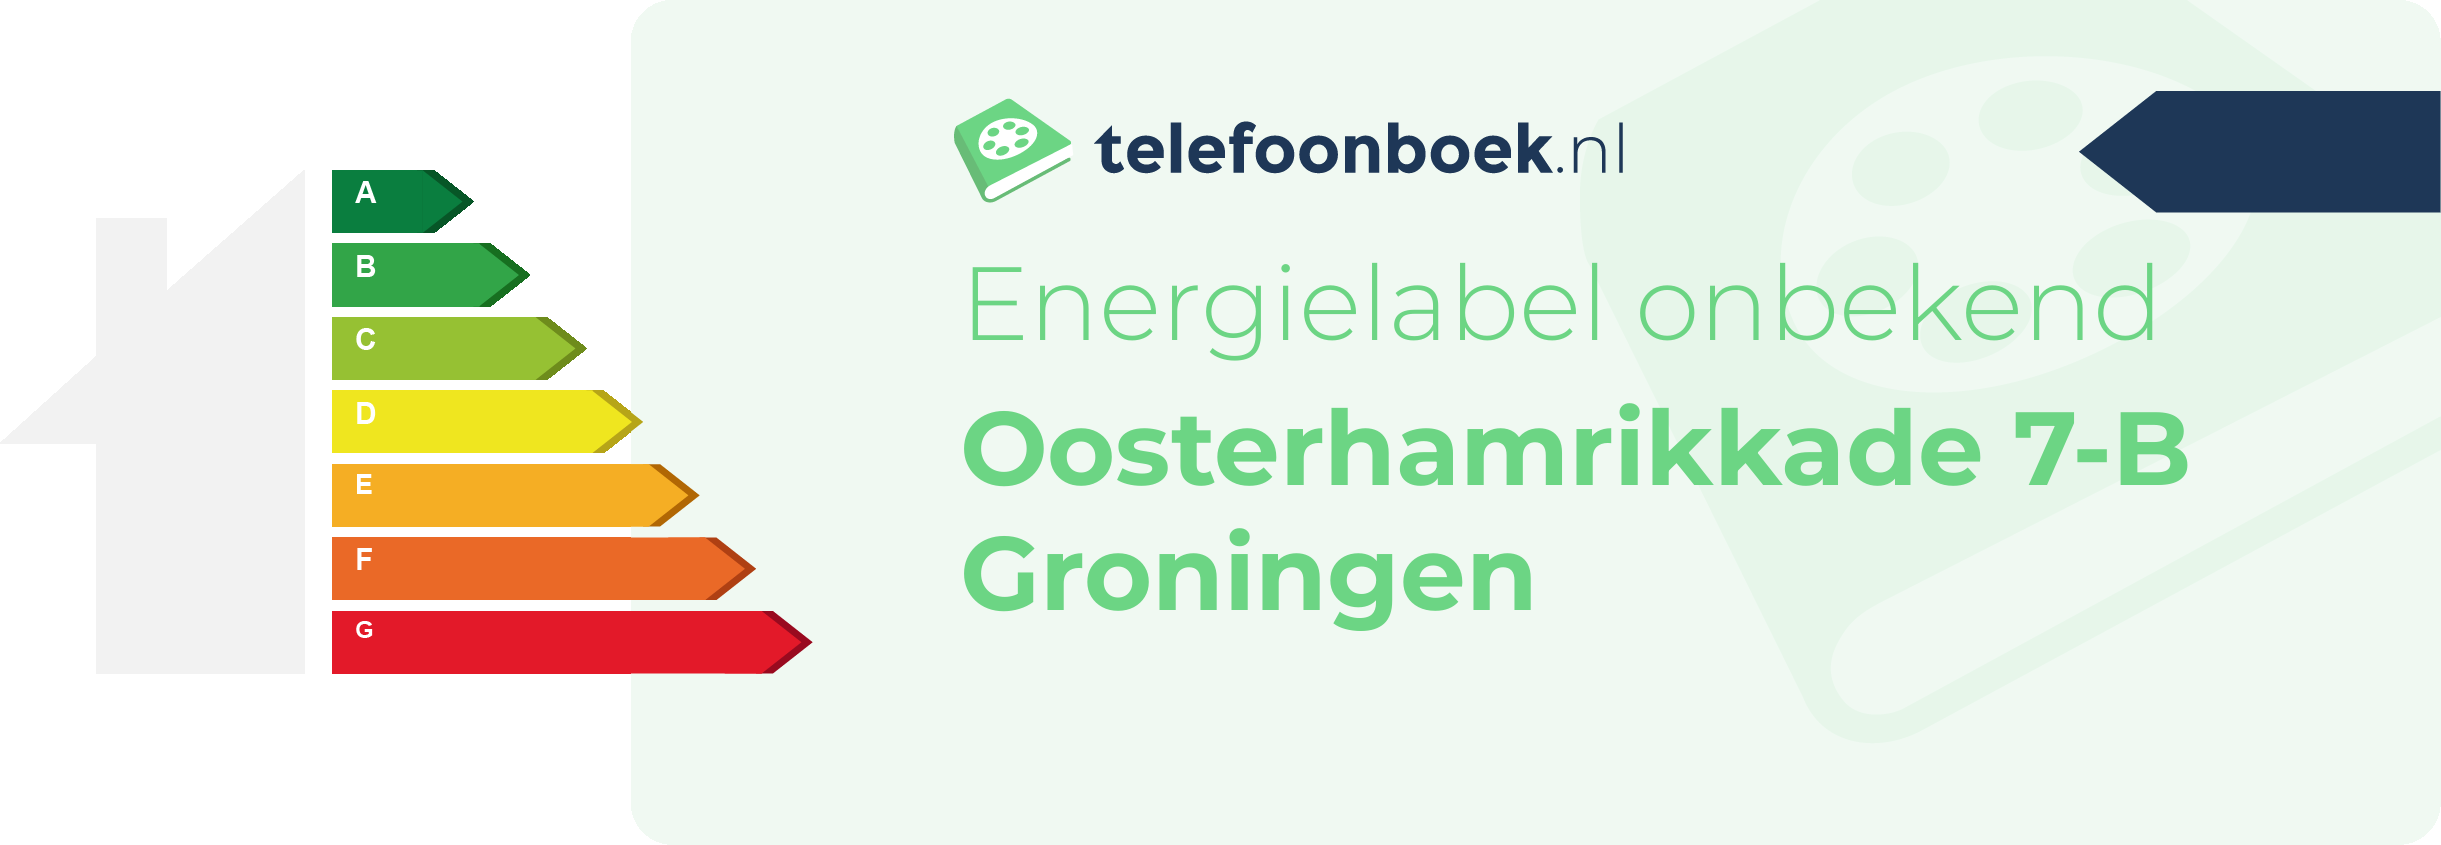 Energielabel Oosterhamrikkade 7-B Groningen